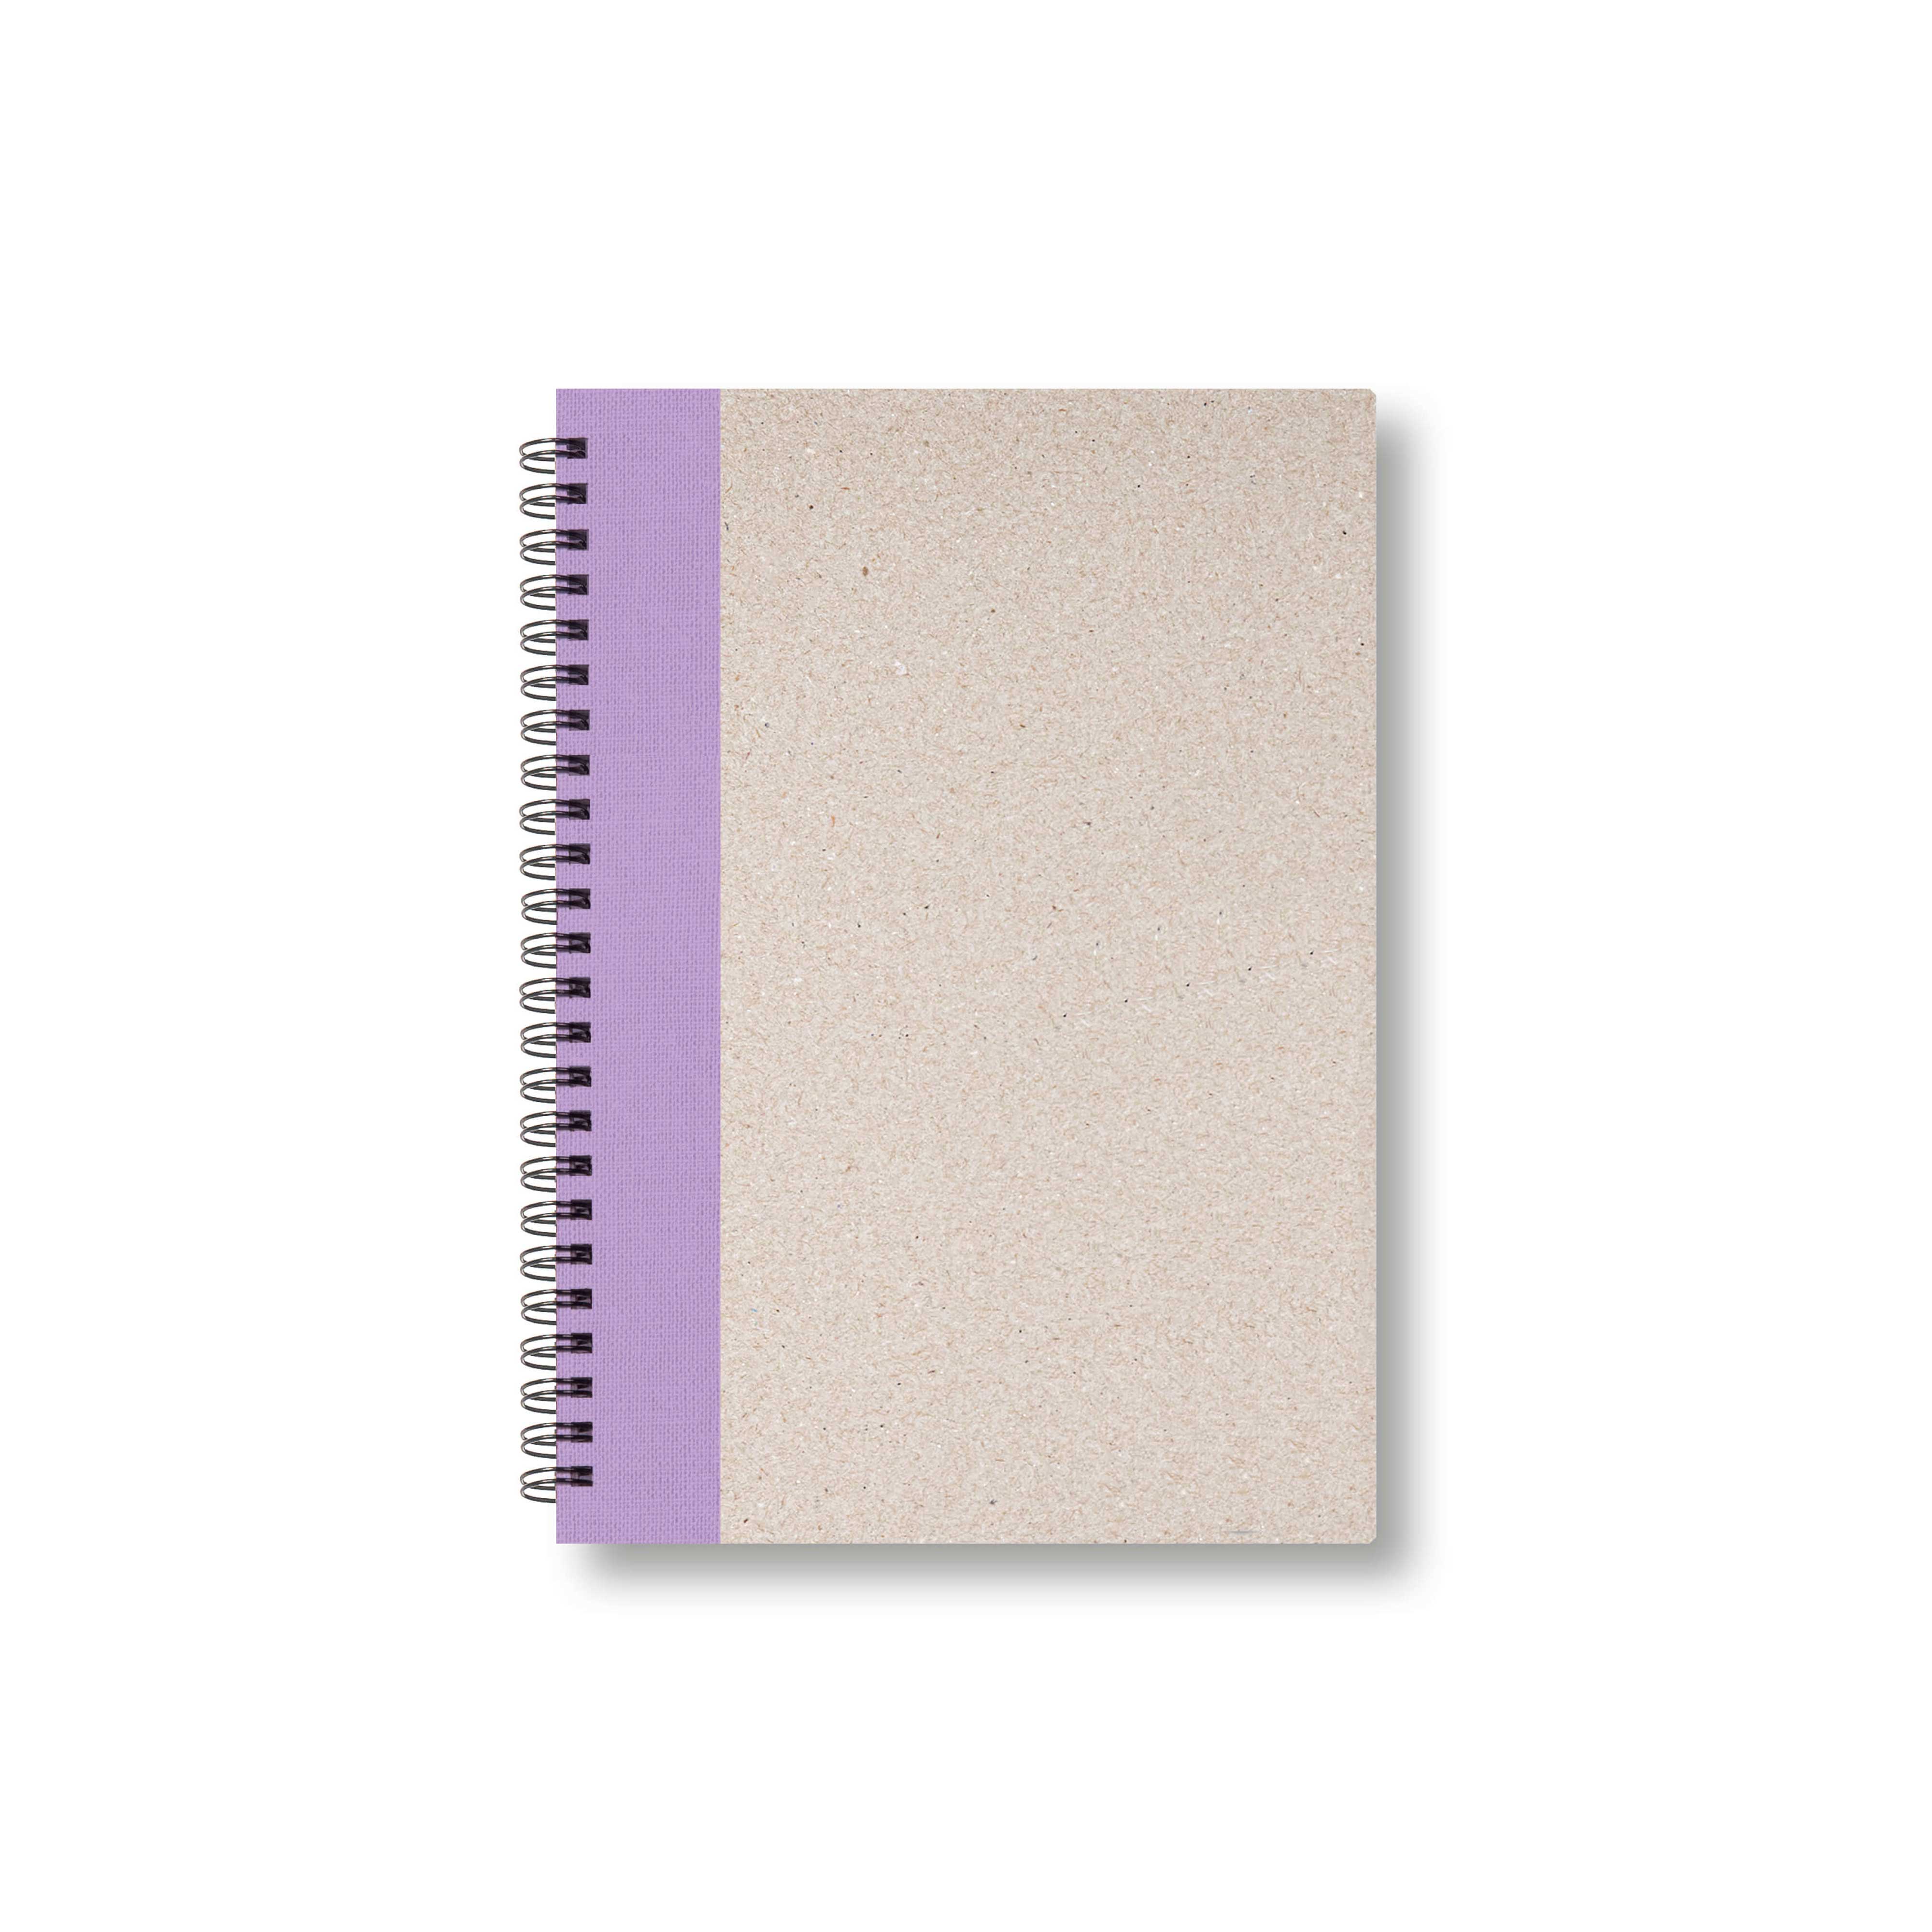 BOBO Zápisník, B6, čtverečkovaný, fialový, konfiguruj si obálku